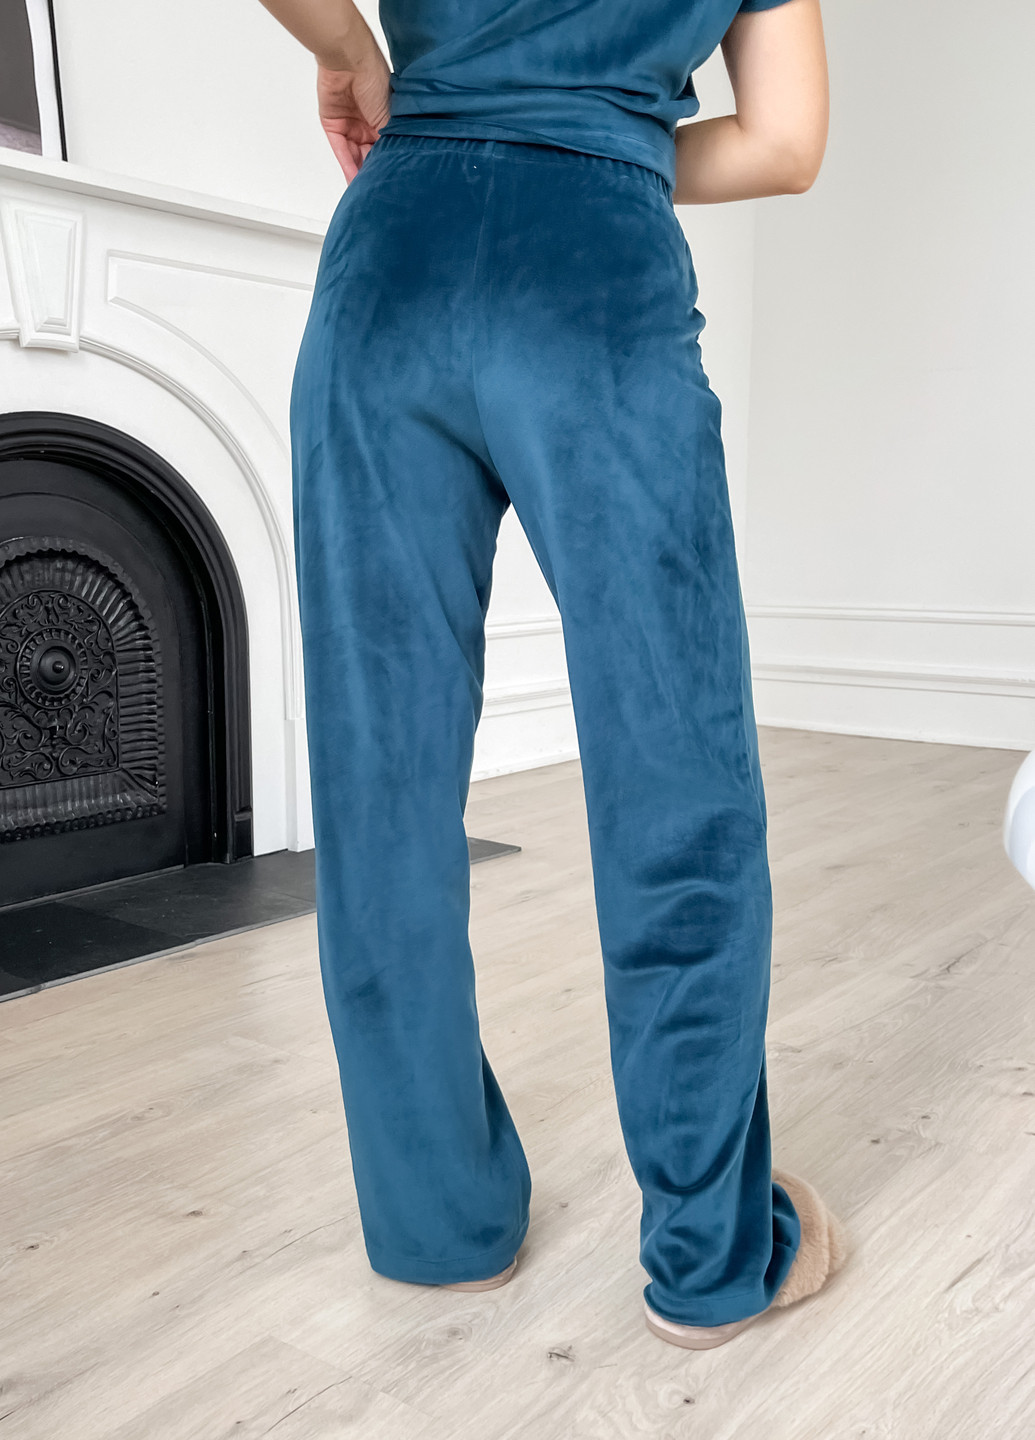 Изумрудная зимняя теплая велюровая женская пижама 3: халат, брюки, футболка изумрудного цвета 100000214 кофта + футболка + брюки Merlini Буя